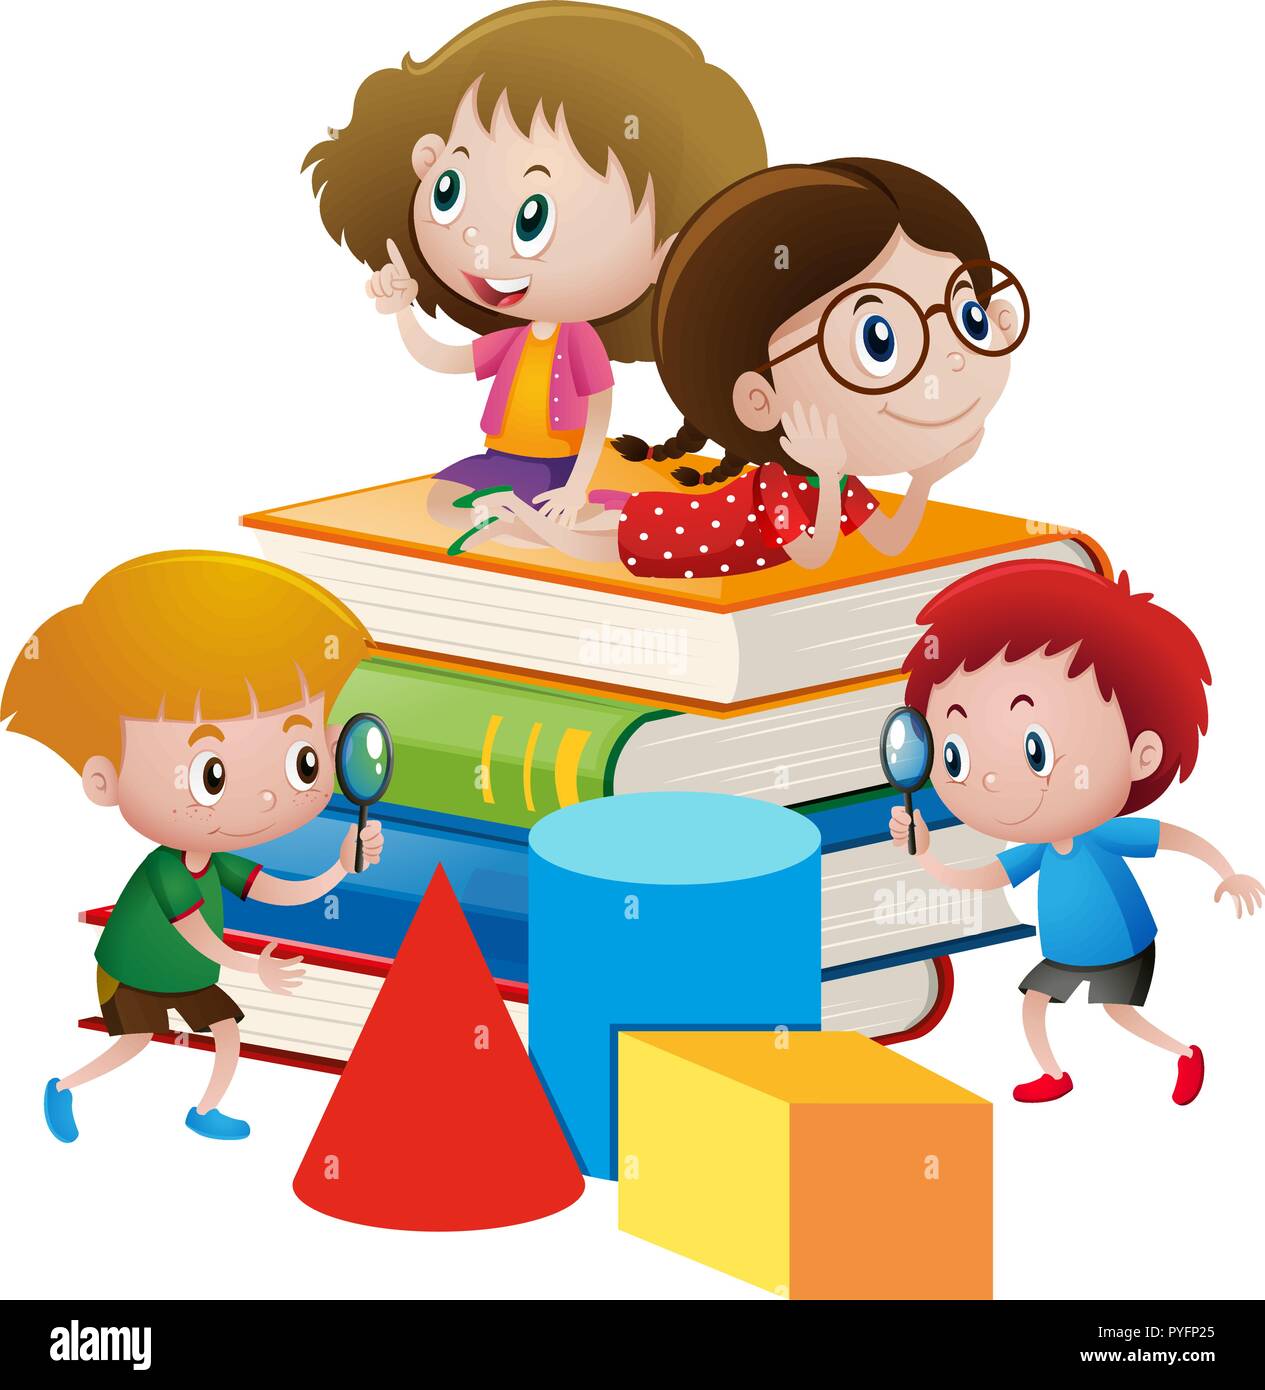 Four kids on giant books illustration Stock Vector